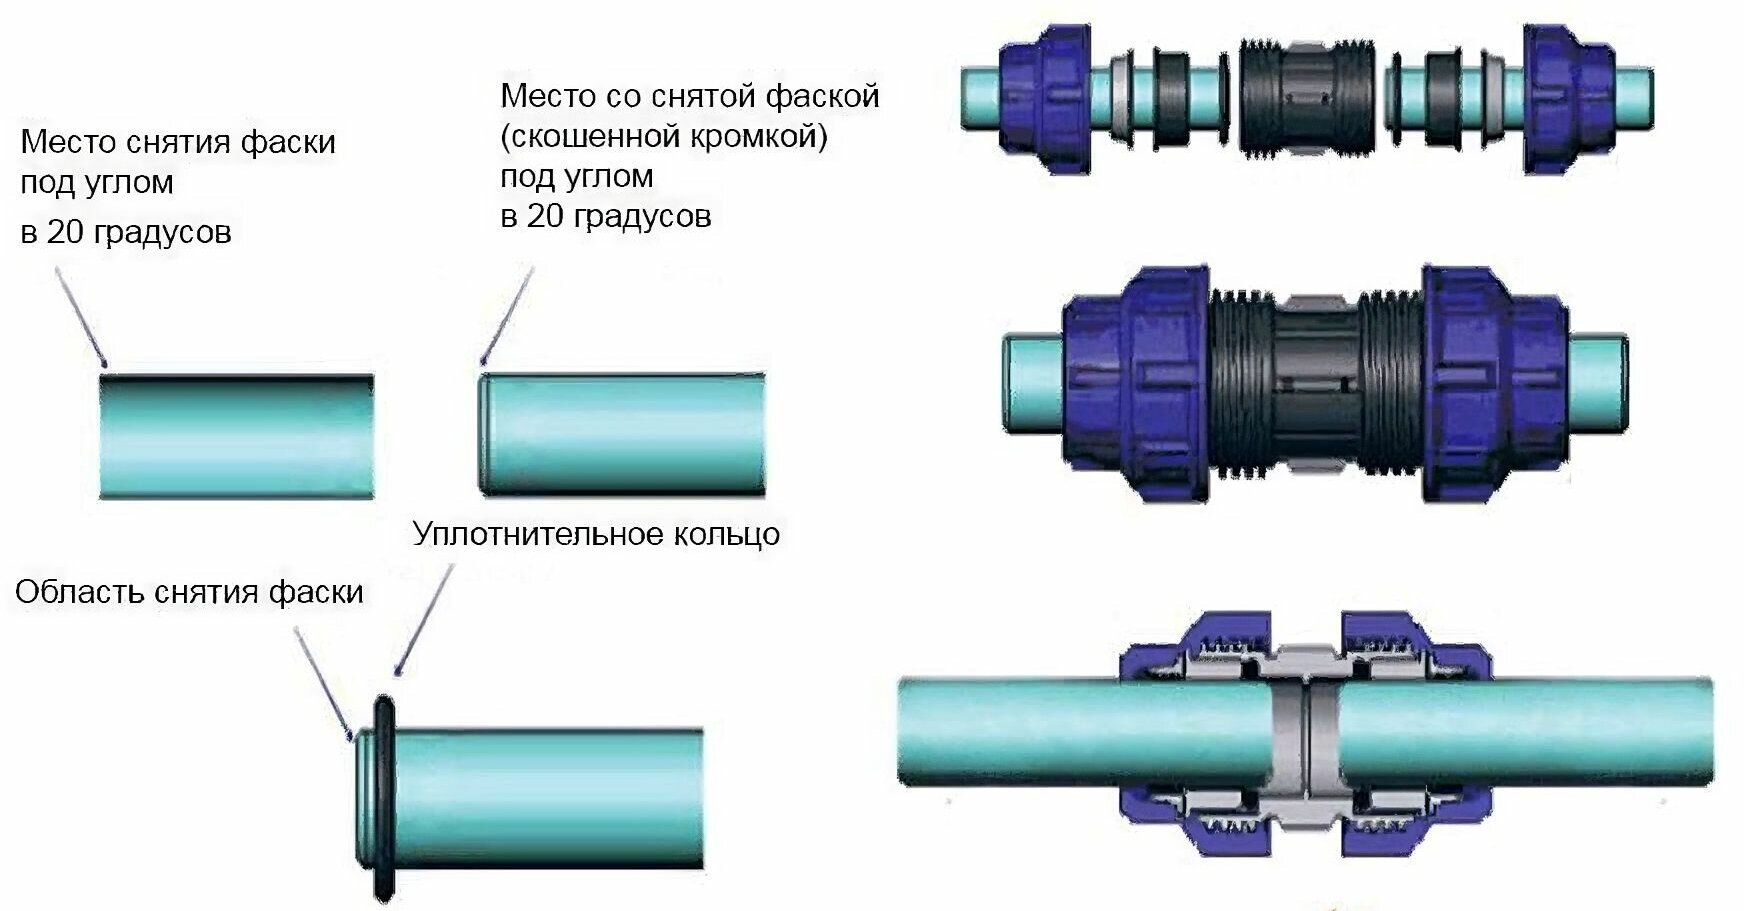 Метод соединения труб. Монтаж муфты соединительной трубы ПНД 32 мм. Схема сборки ПНД труб на фитингах. Муфта соединительная для труб ПНД 20. Ремонтная муфта для ПНД трубы 32.